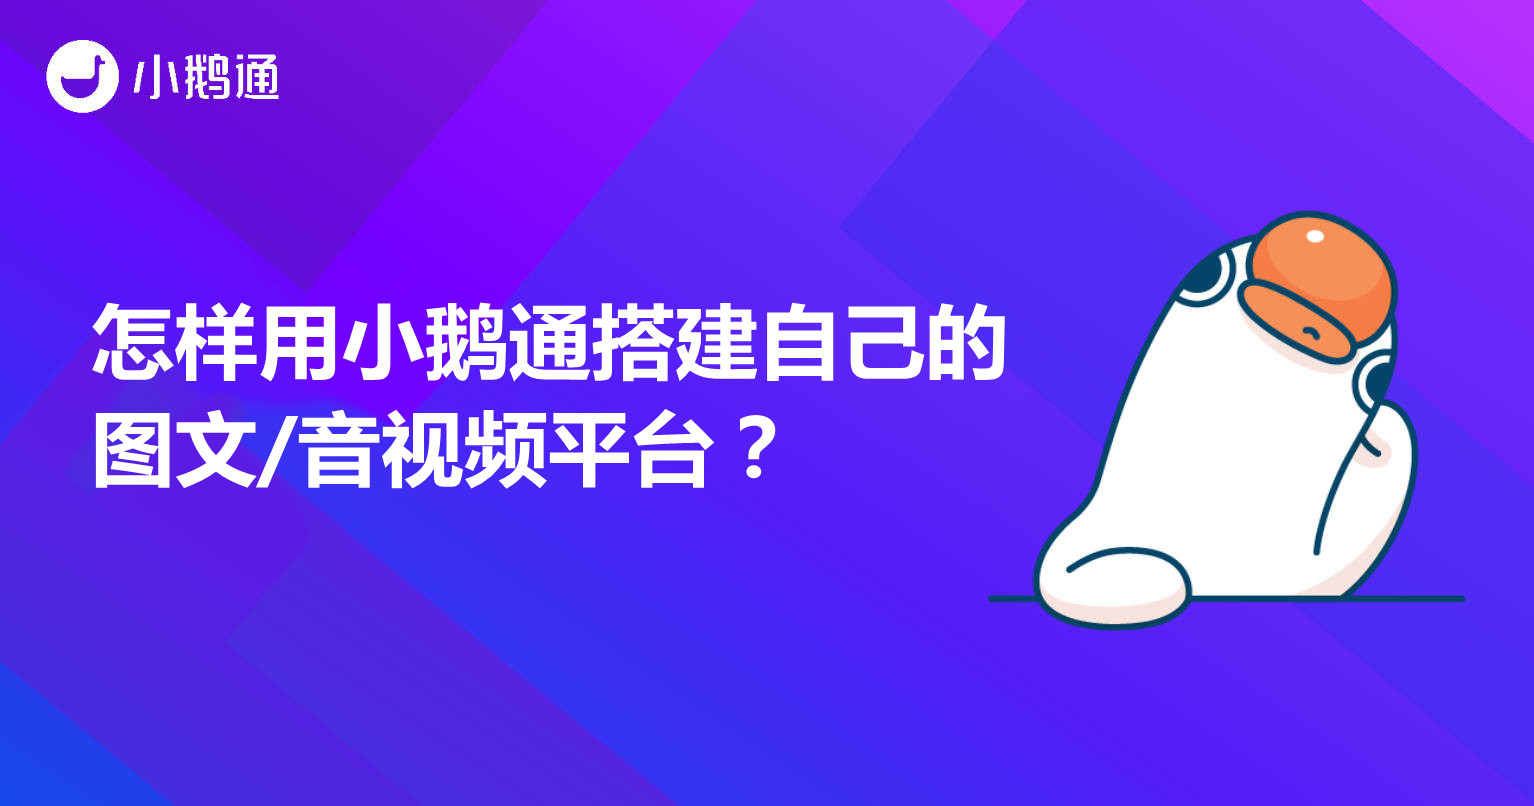 闵行怎样用小鹅通搭建自己的图文/音视频平台？